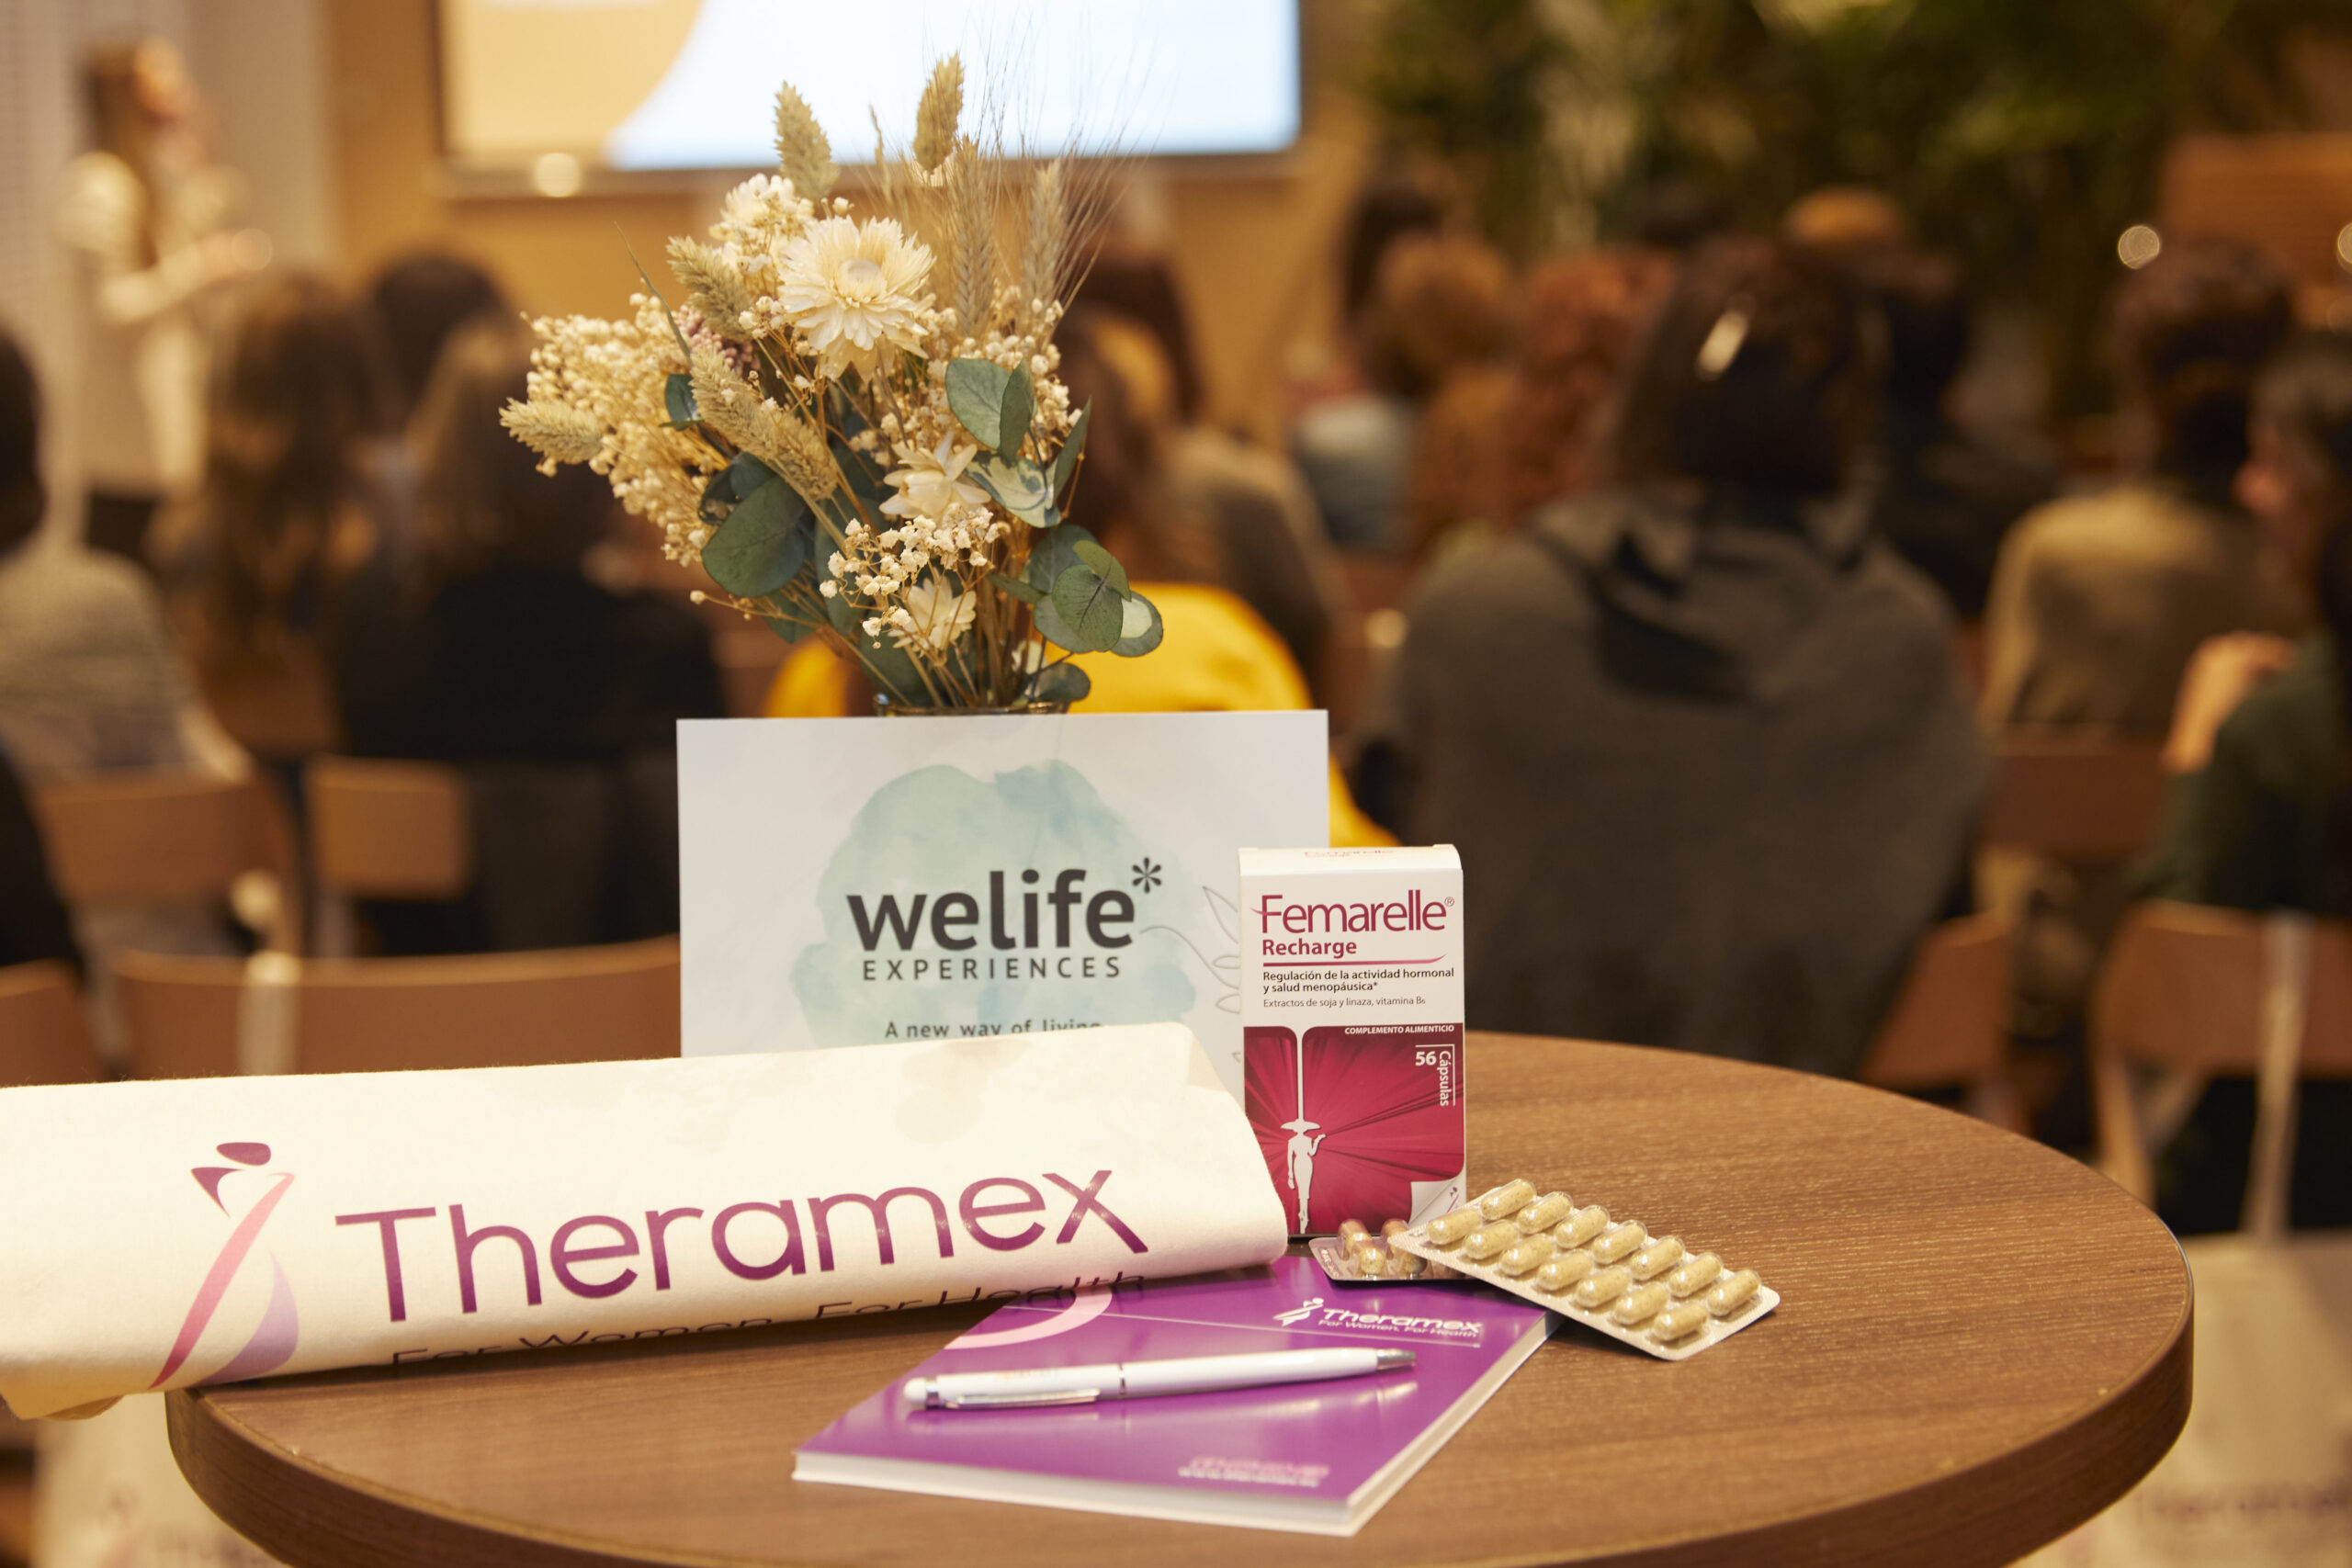 WeLife-menopausia_theramex